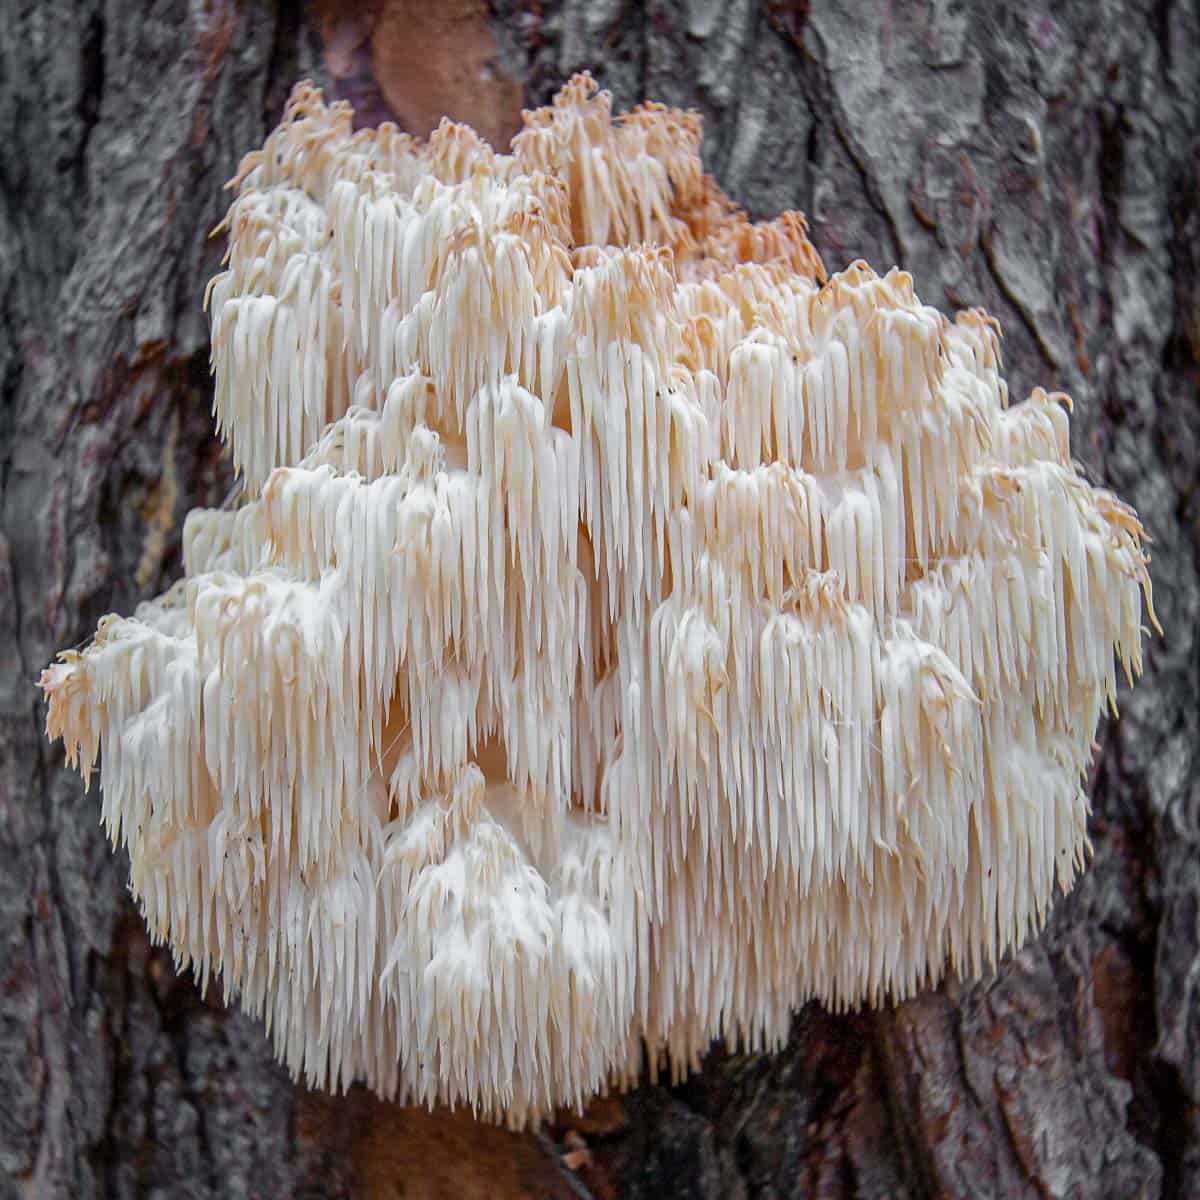 Edible Hericium americanum mushrooms